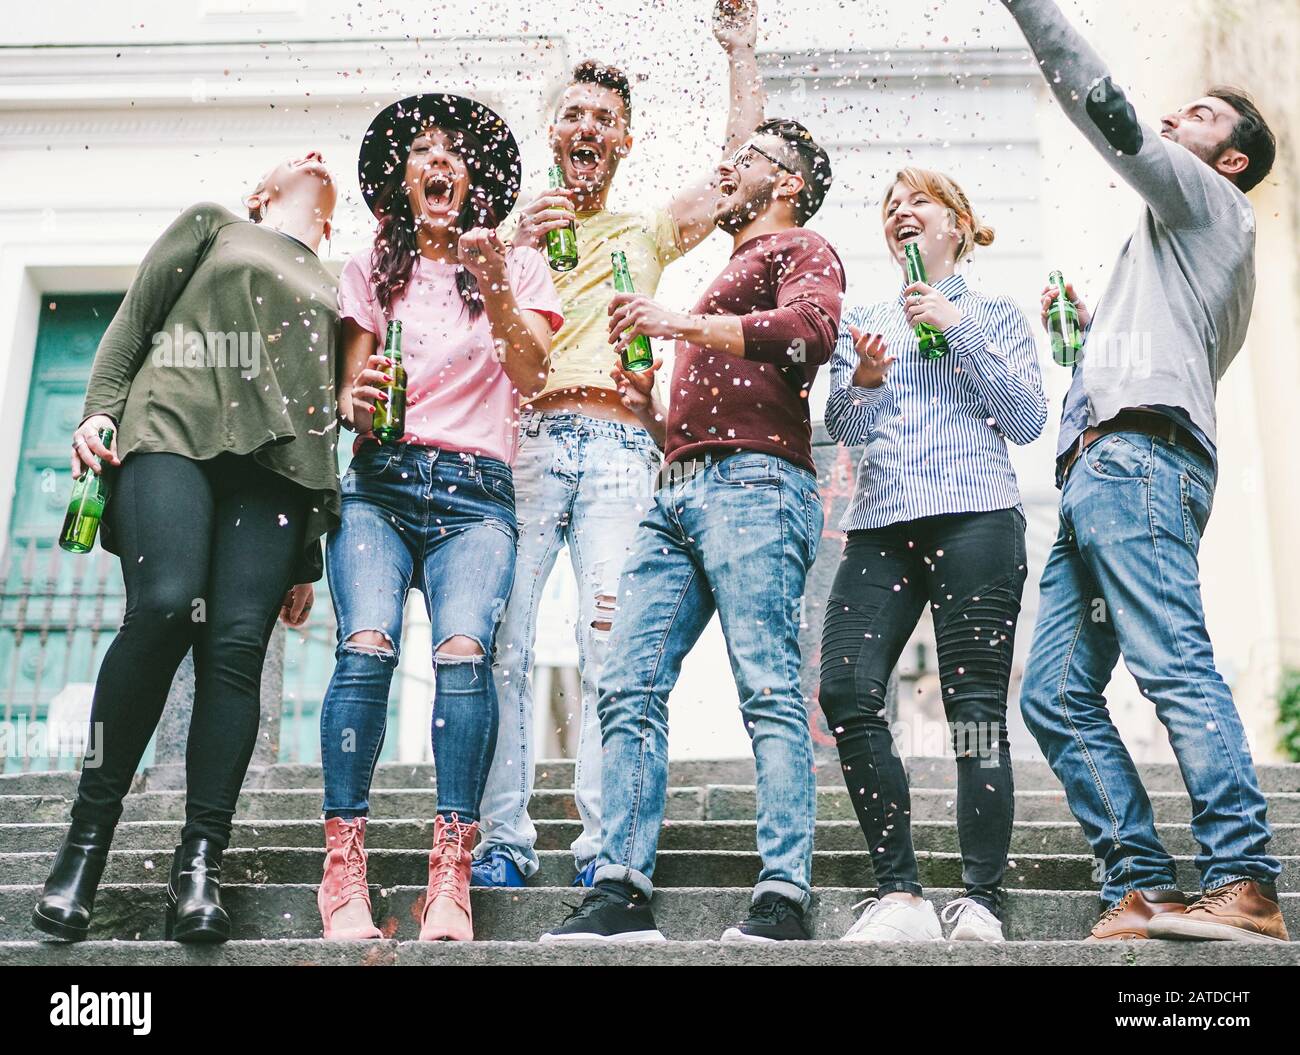 Fröhliche verrückte Freunde feiern auf der Straße Bier trinken und Konfetti werfen - Junge Studenten haben Spaß zusammen - Freundschafts- und Jugendkonzept Stockfoto